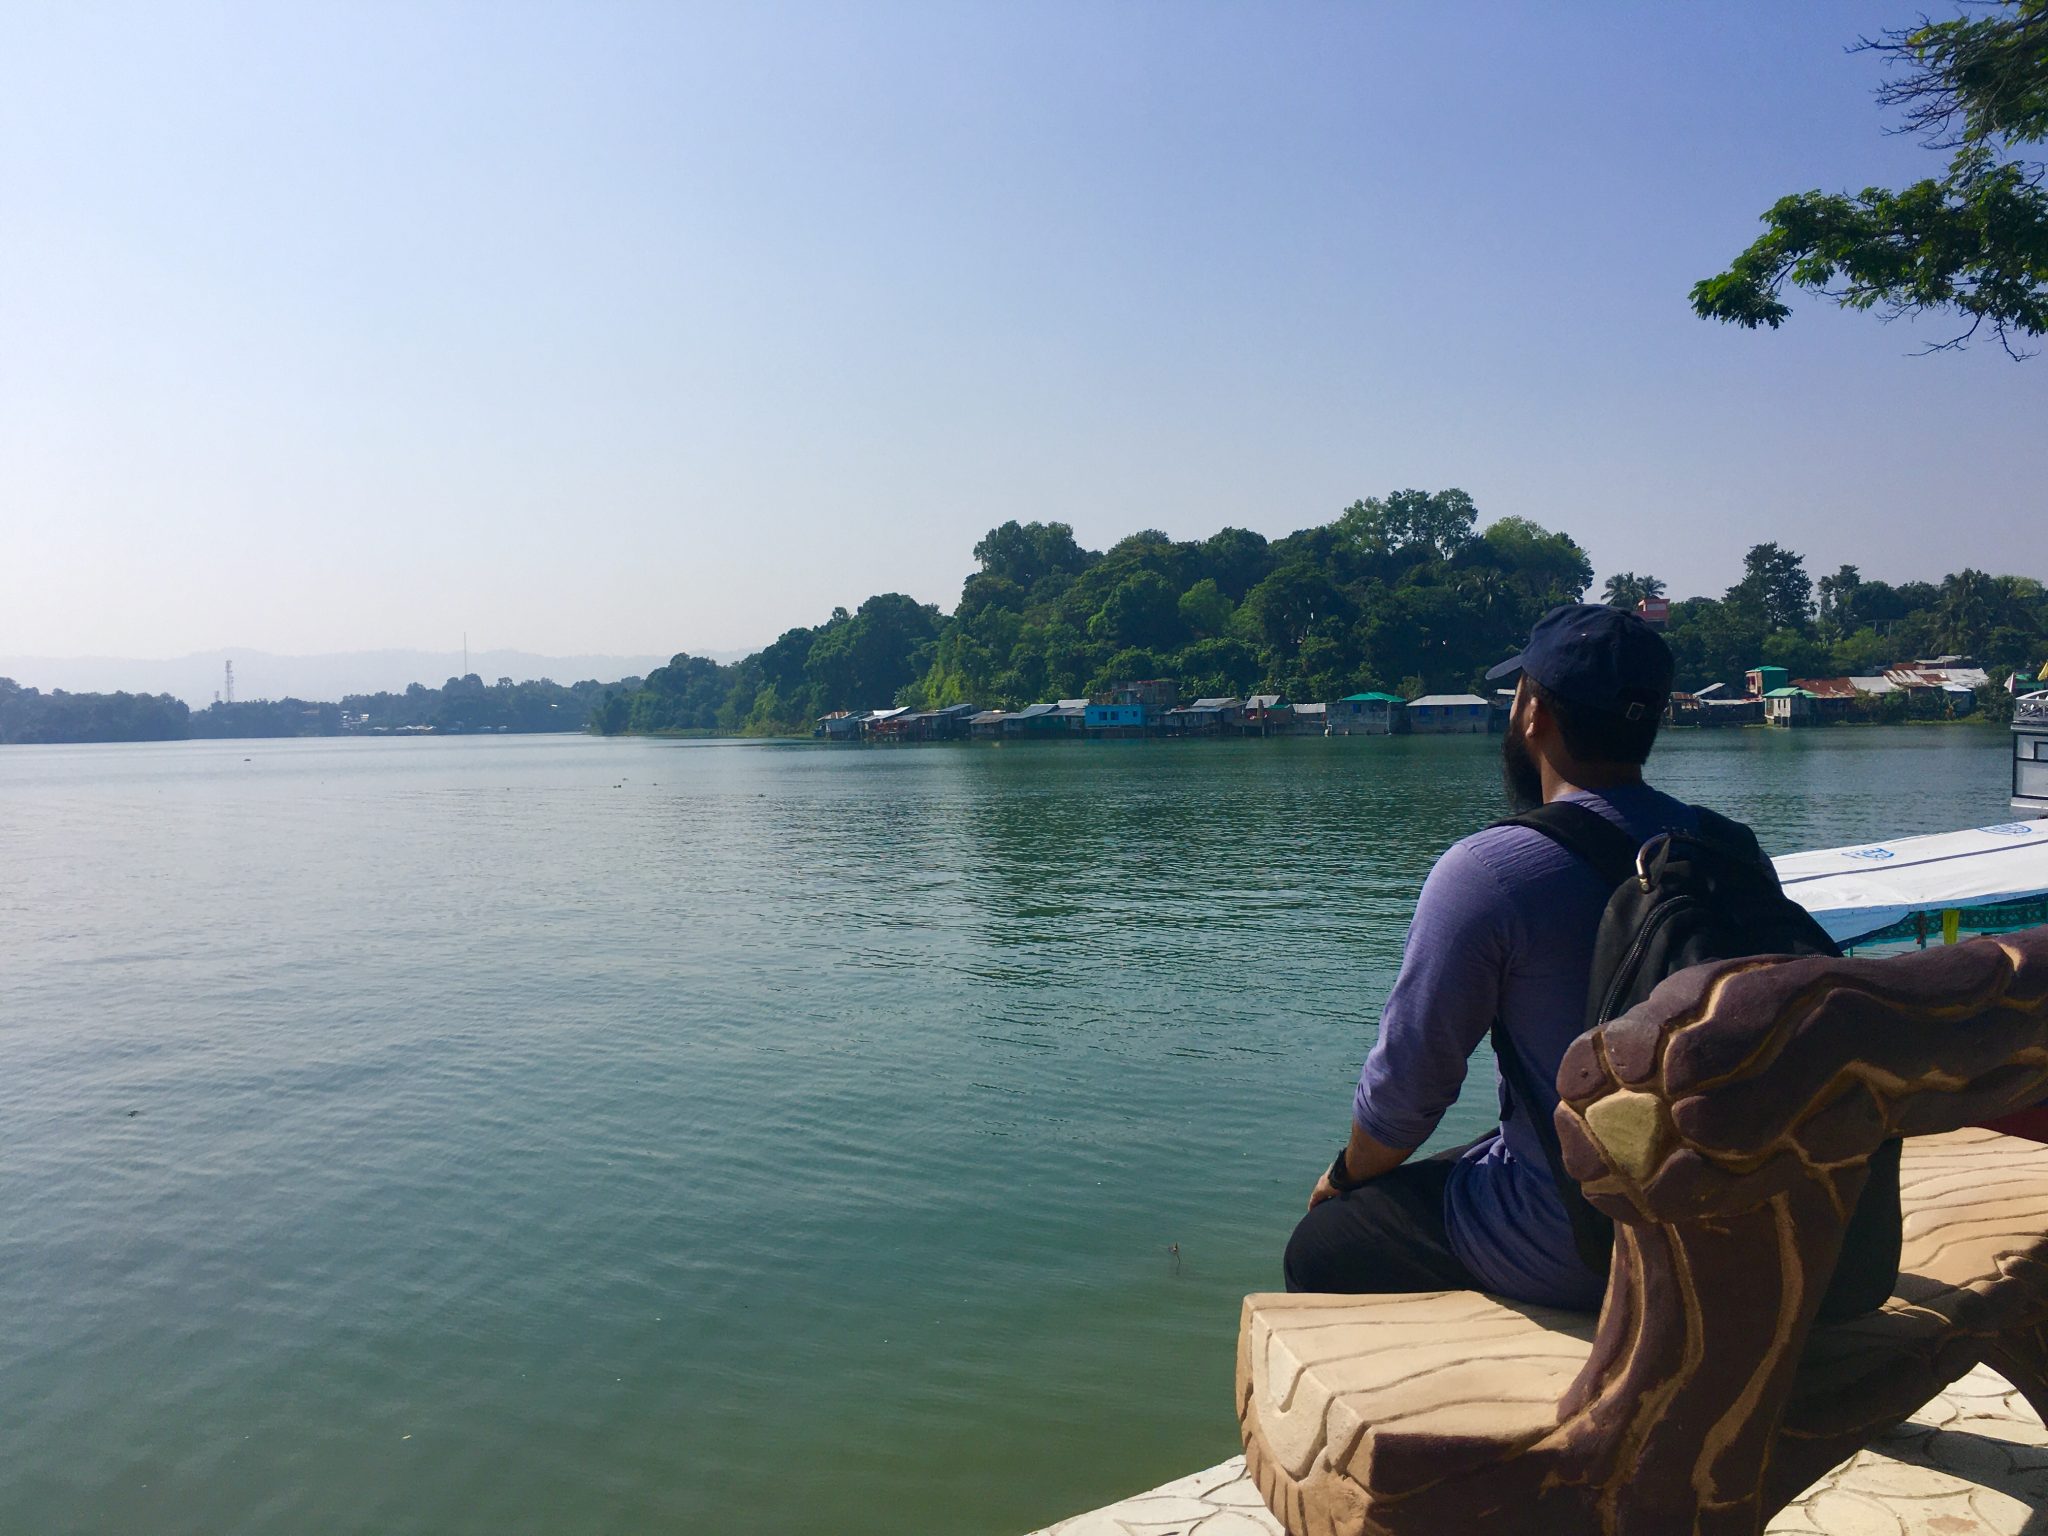 Rakib looking at the natural lake view at Kaptai, Chittagong